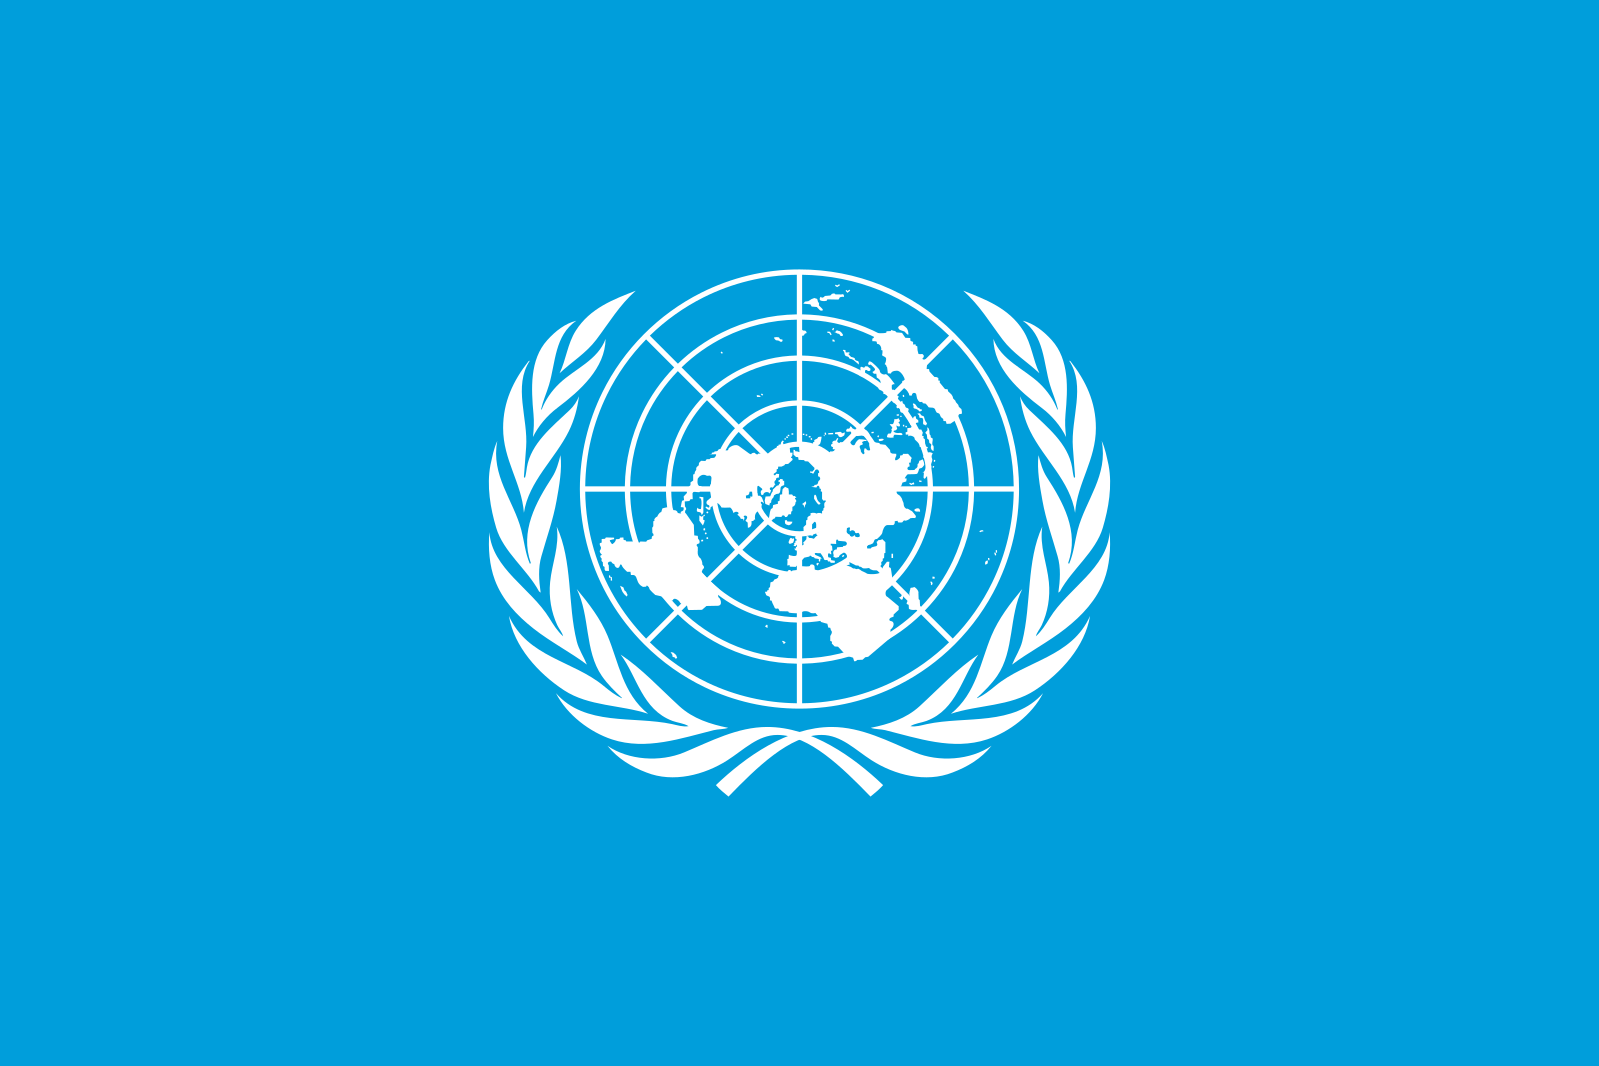 Международные организации оон. Эмблема воз всемирной организации здравоохранения. Совет безопасности ООН эмблема. Генеральная Ассамблея ООН символ. Флаг ООН.